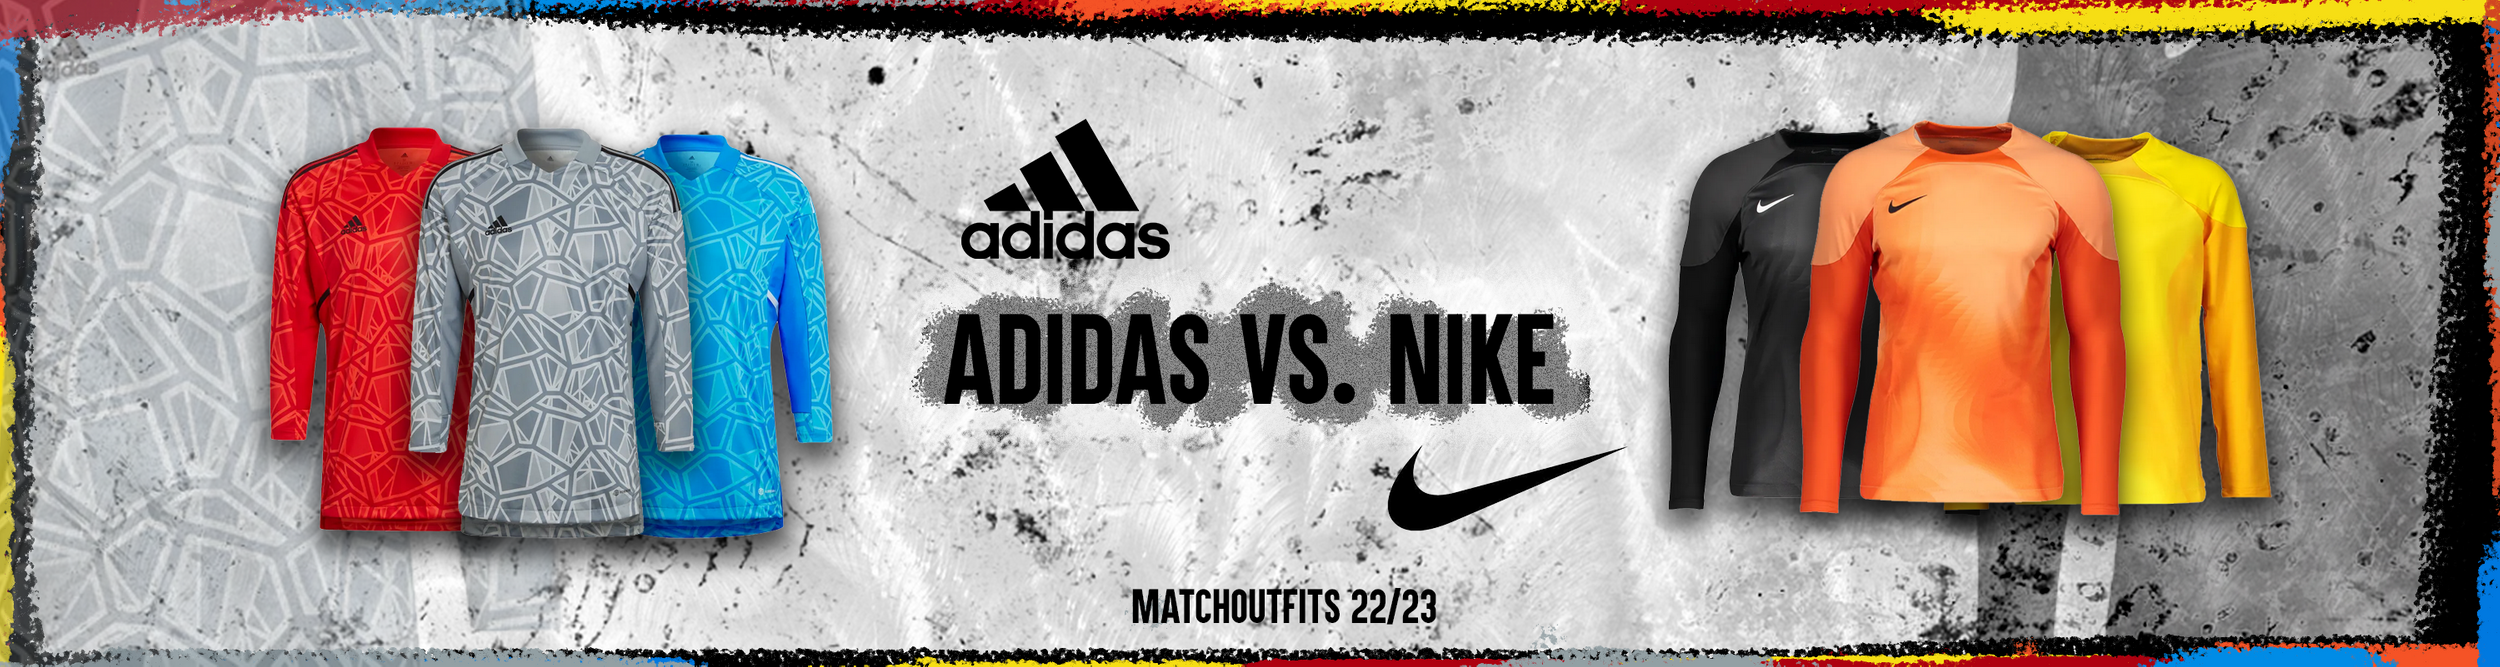 Adidas Matchoutfits Nike Mathoutfits 2022 2023